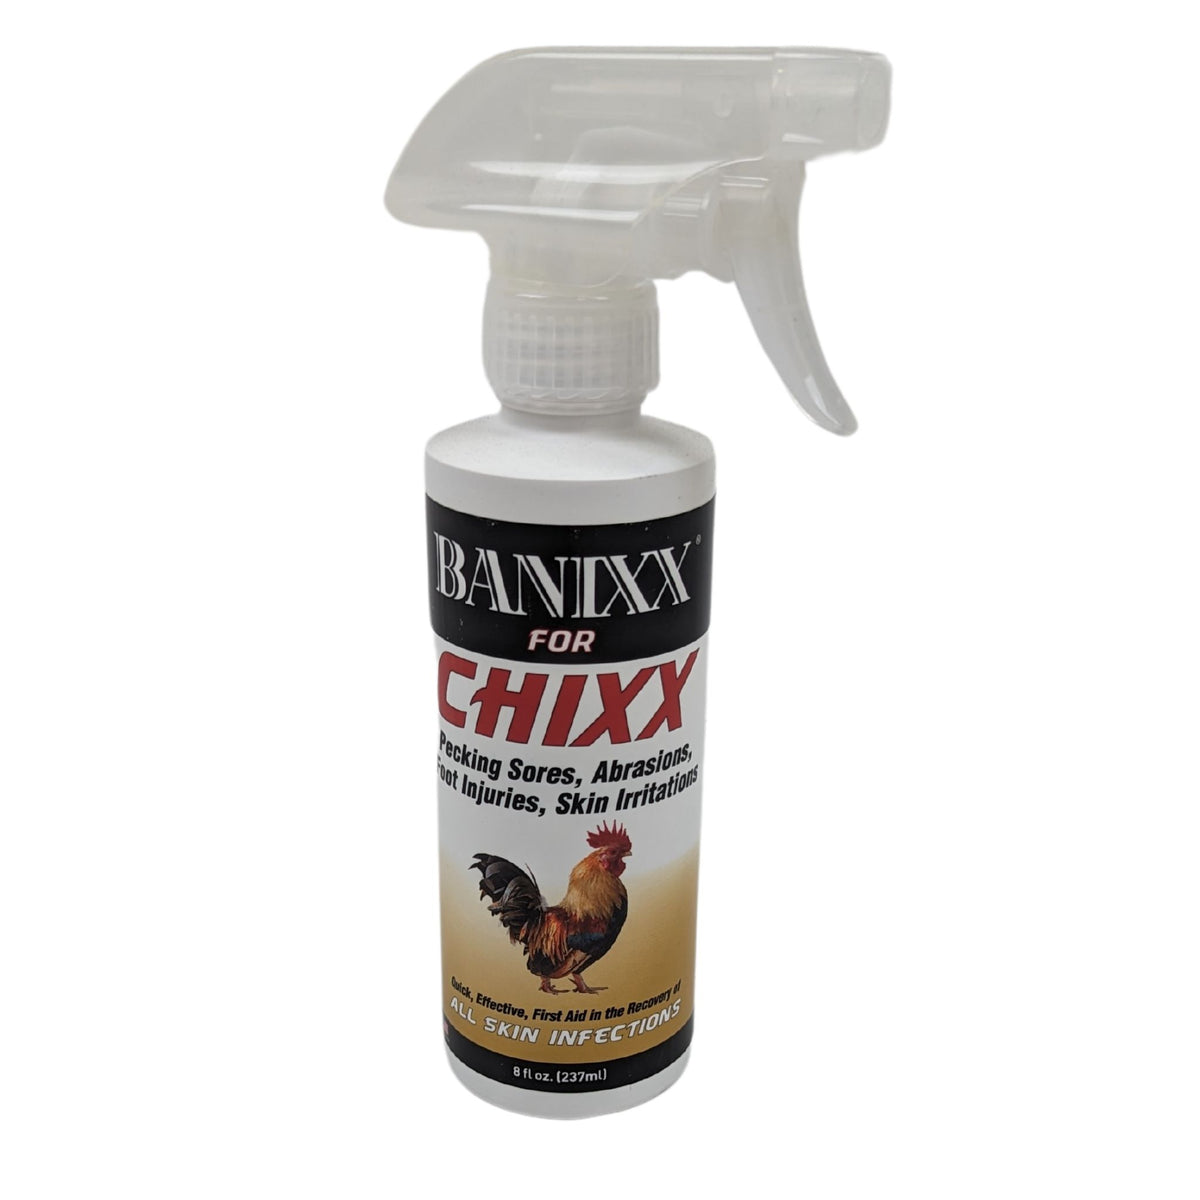 Bannixx for Chixx 8 fl oz